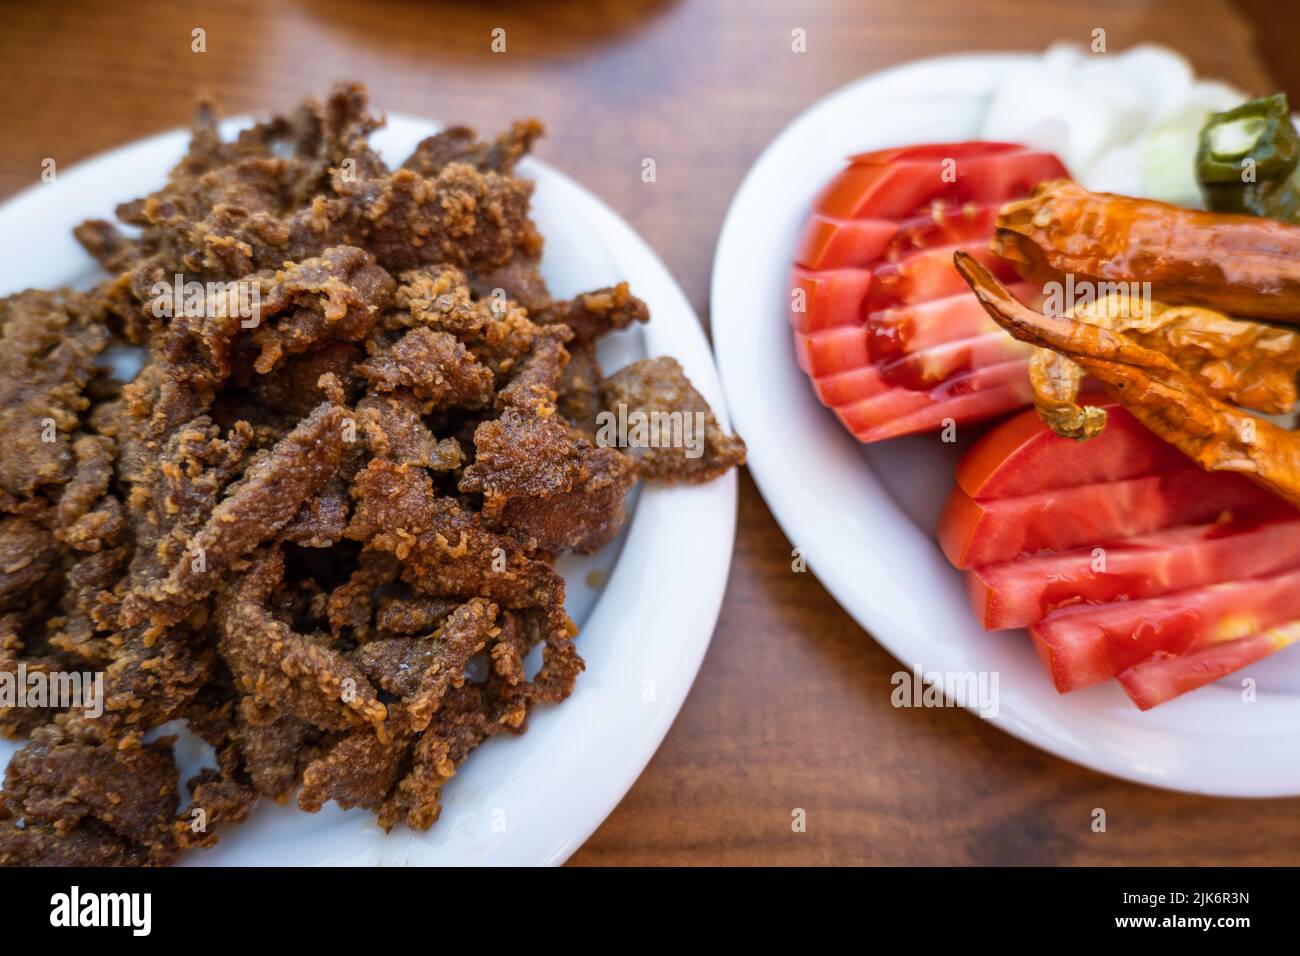 Edirne Ciger Dish (Tava Ciger auf Türkisch), Spezialitätengerichte in Edirne, Türkei. Leber in Öl gekocht. Türkische Küche. Stockfoto